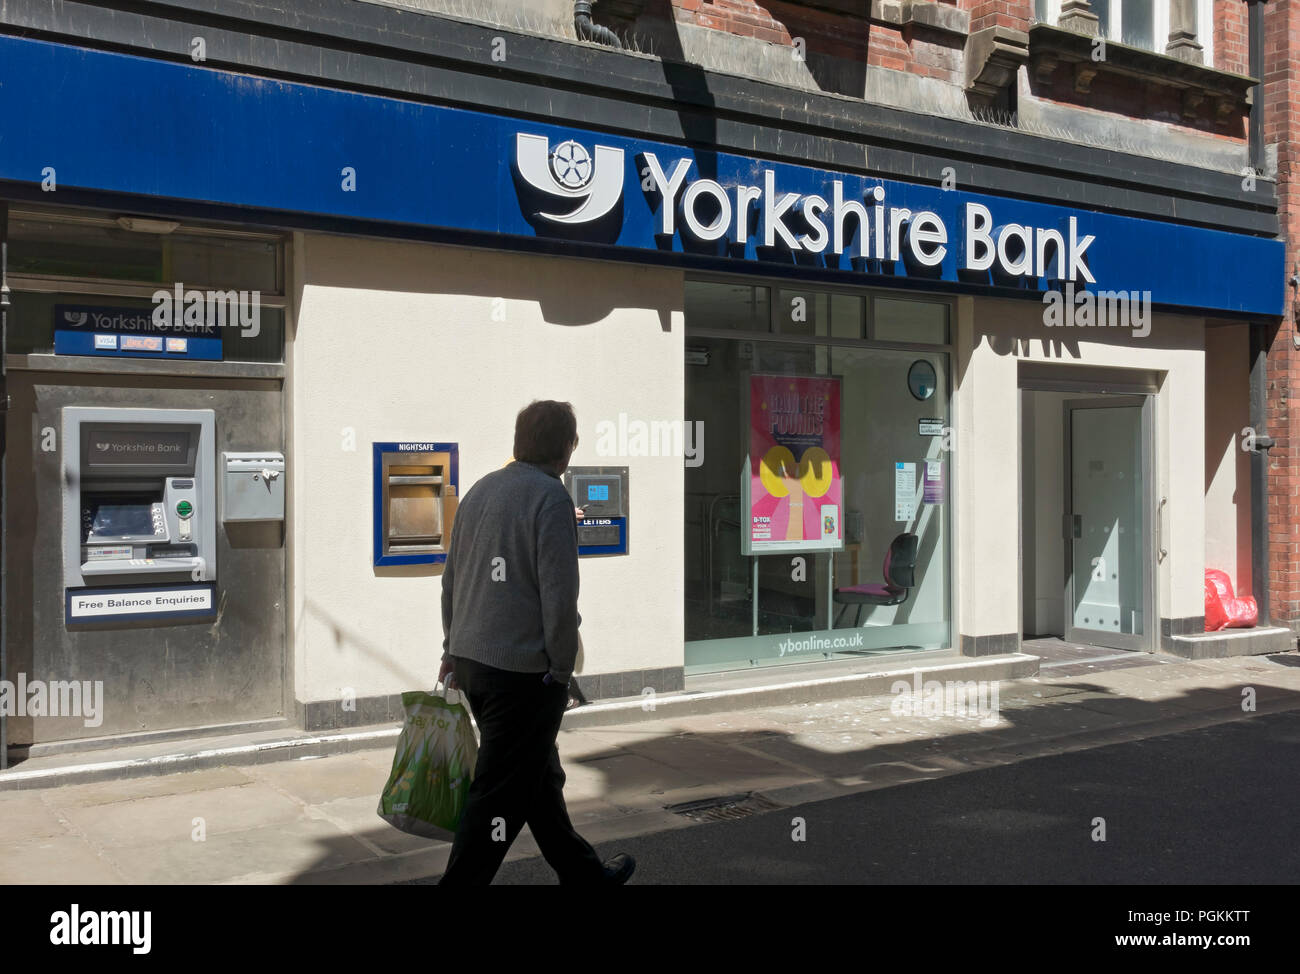 Außenansicht der Yorkshire Bank und Geldautomat im Sommer Whitby North Yorkshire England Großbritannien Großbritannien Großbritannien Großbritannien Großbritannien Großbritannien Großbritannien Großbritannien Großbritannien Stockfoto